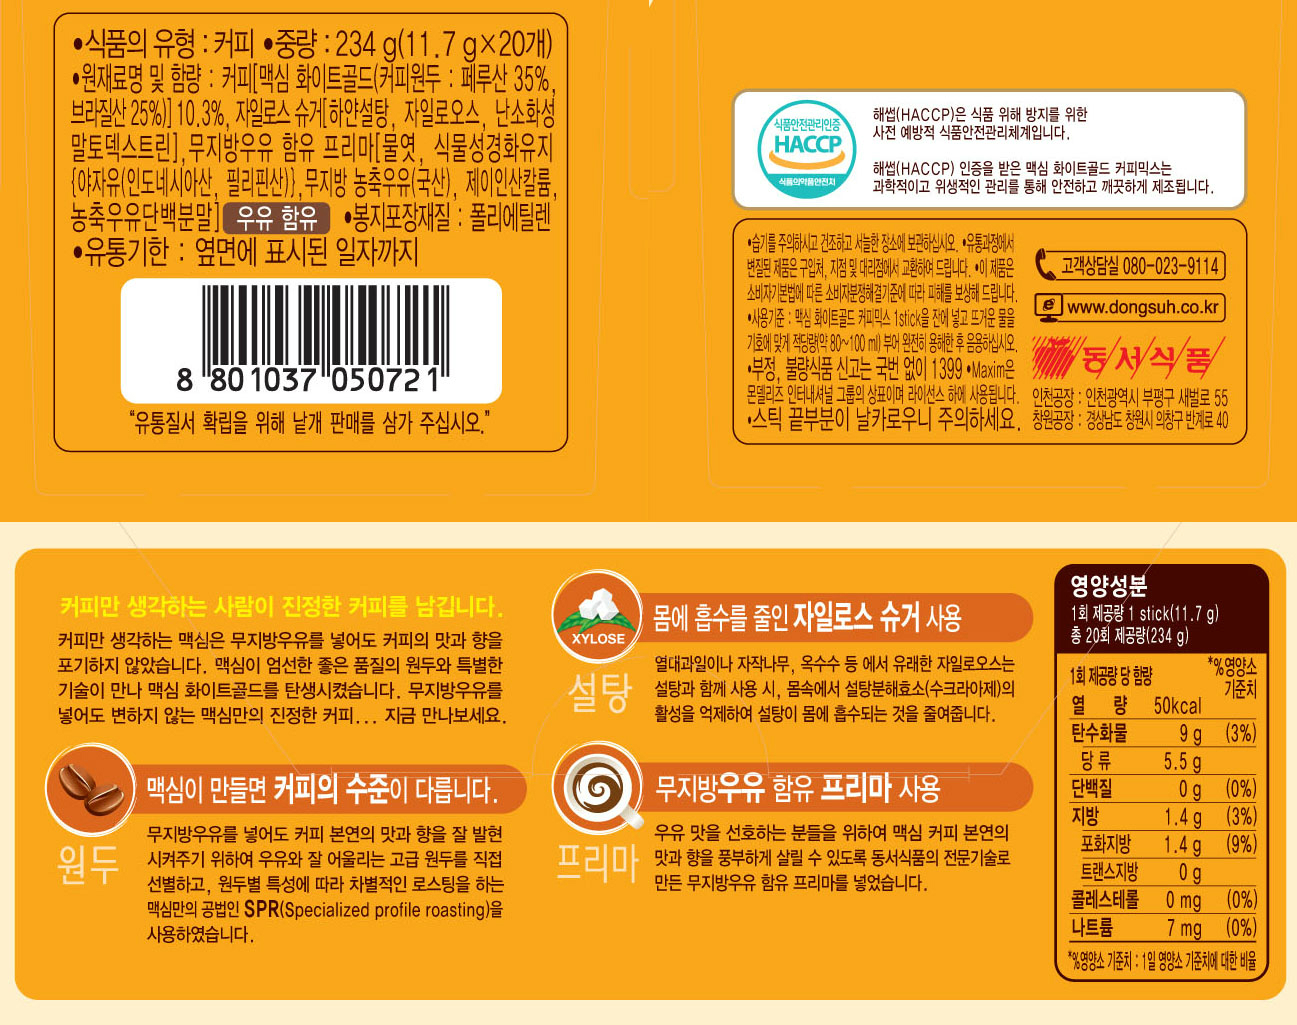 韓國食品-[맥심] 화이트골드커피믹스 11.7g*20입